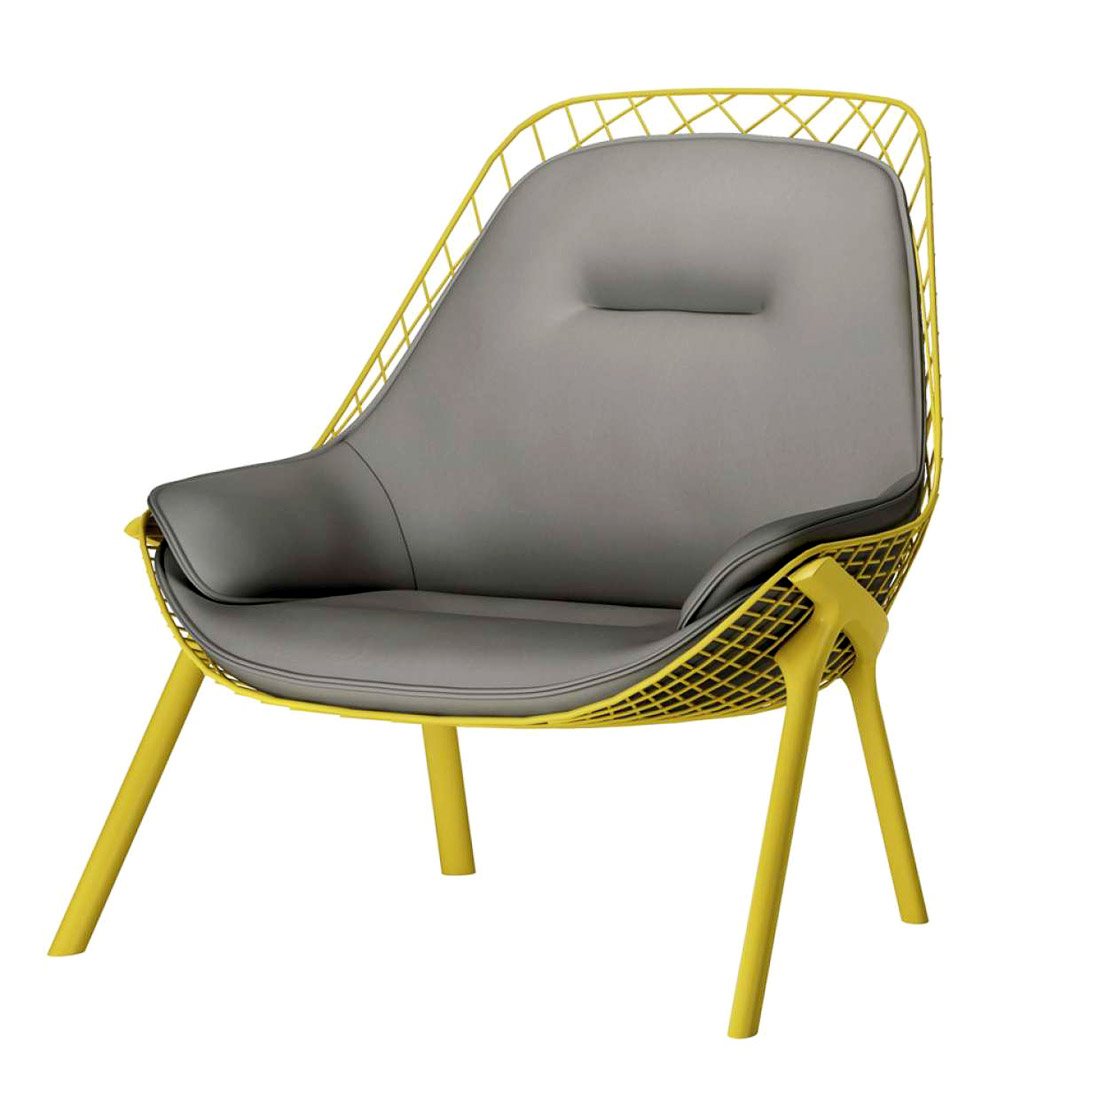 Дизайнерское кресло для дома, фото